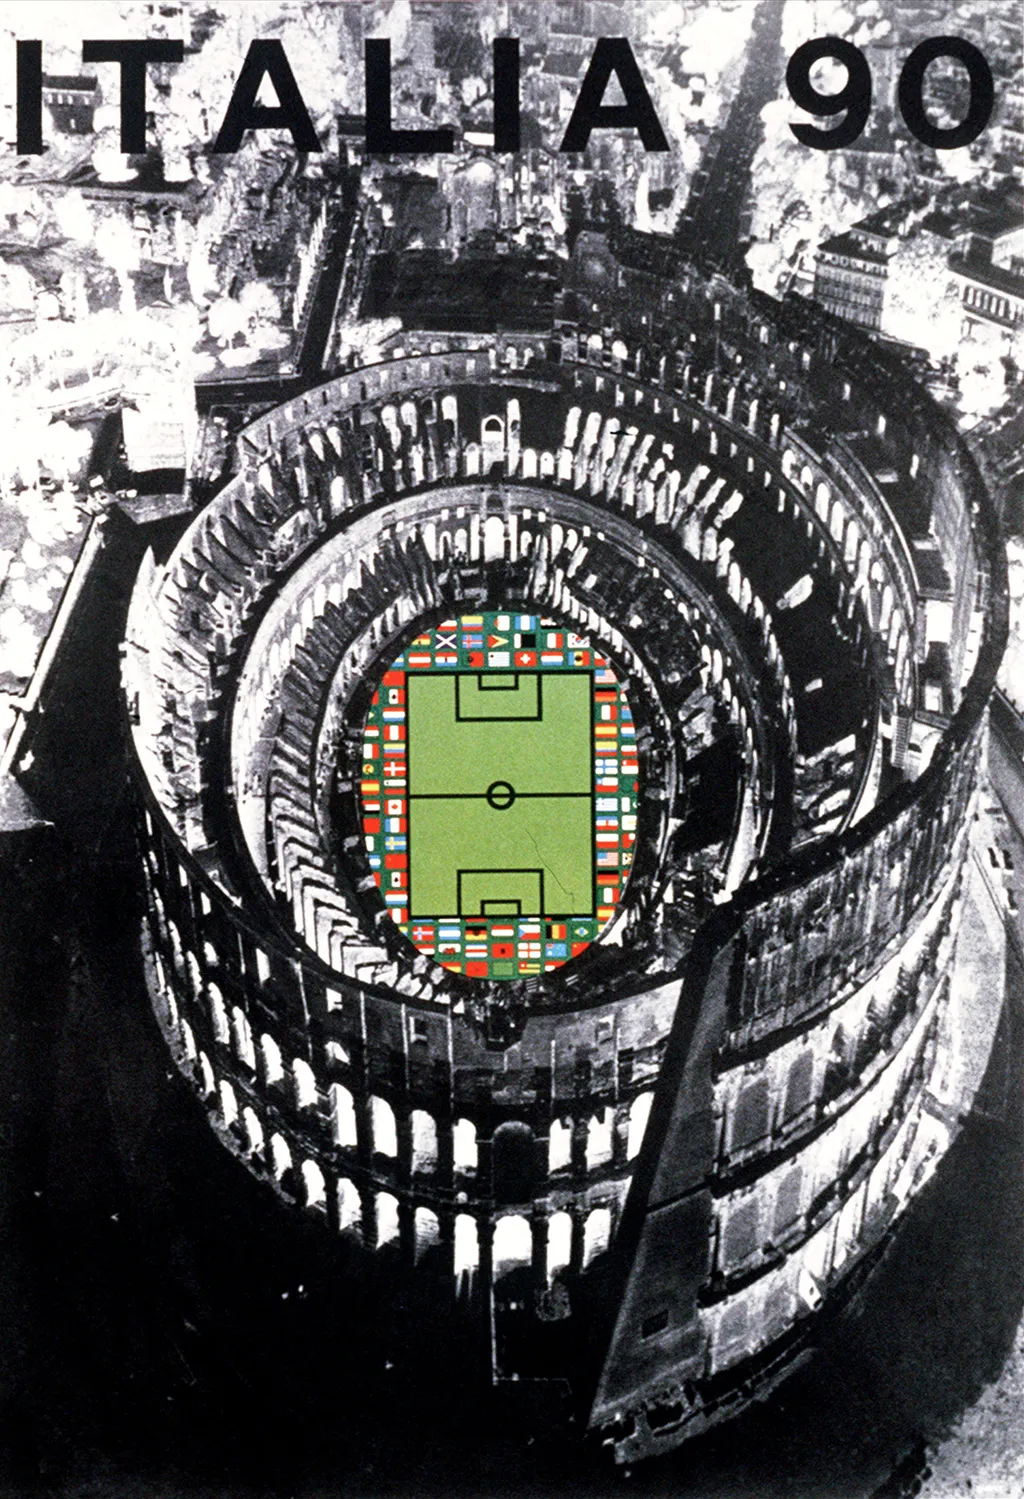 Labdarúgó-világbajnokság, labdarúgóvébé, futballvébé, labdarúgás, hivatalos plakát, poszter, 1990, Olaszország 